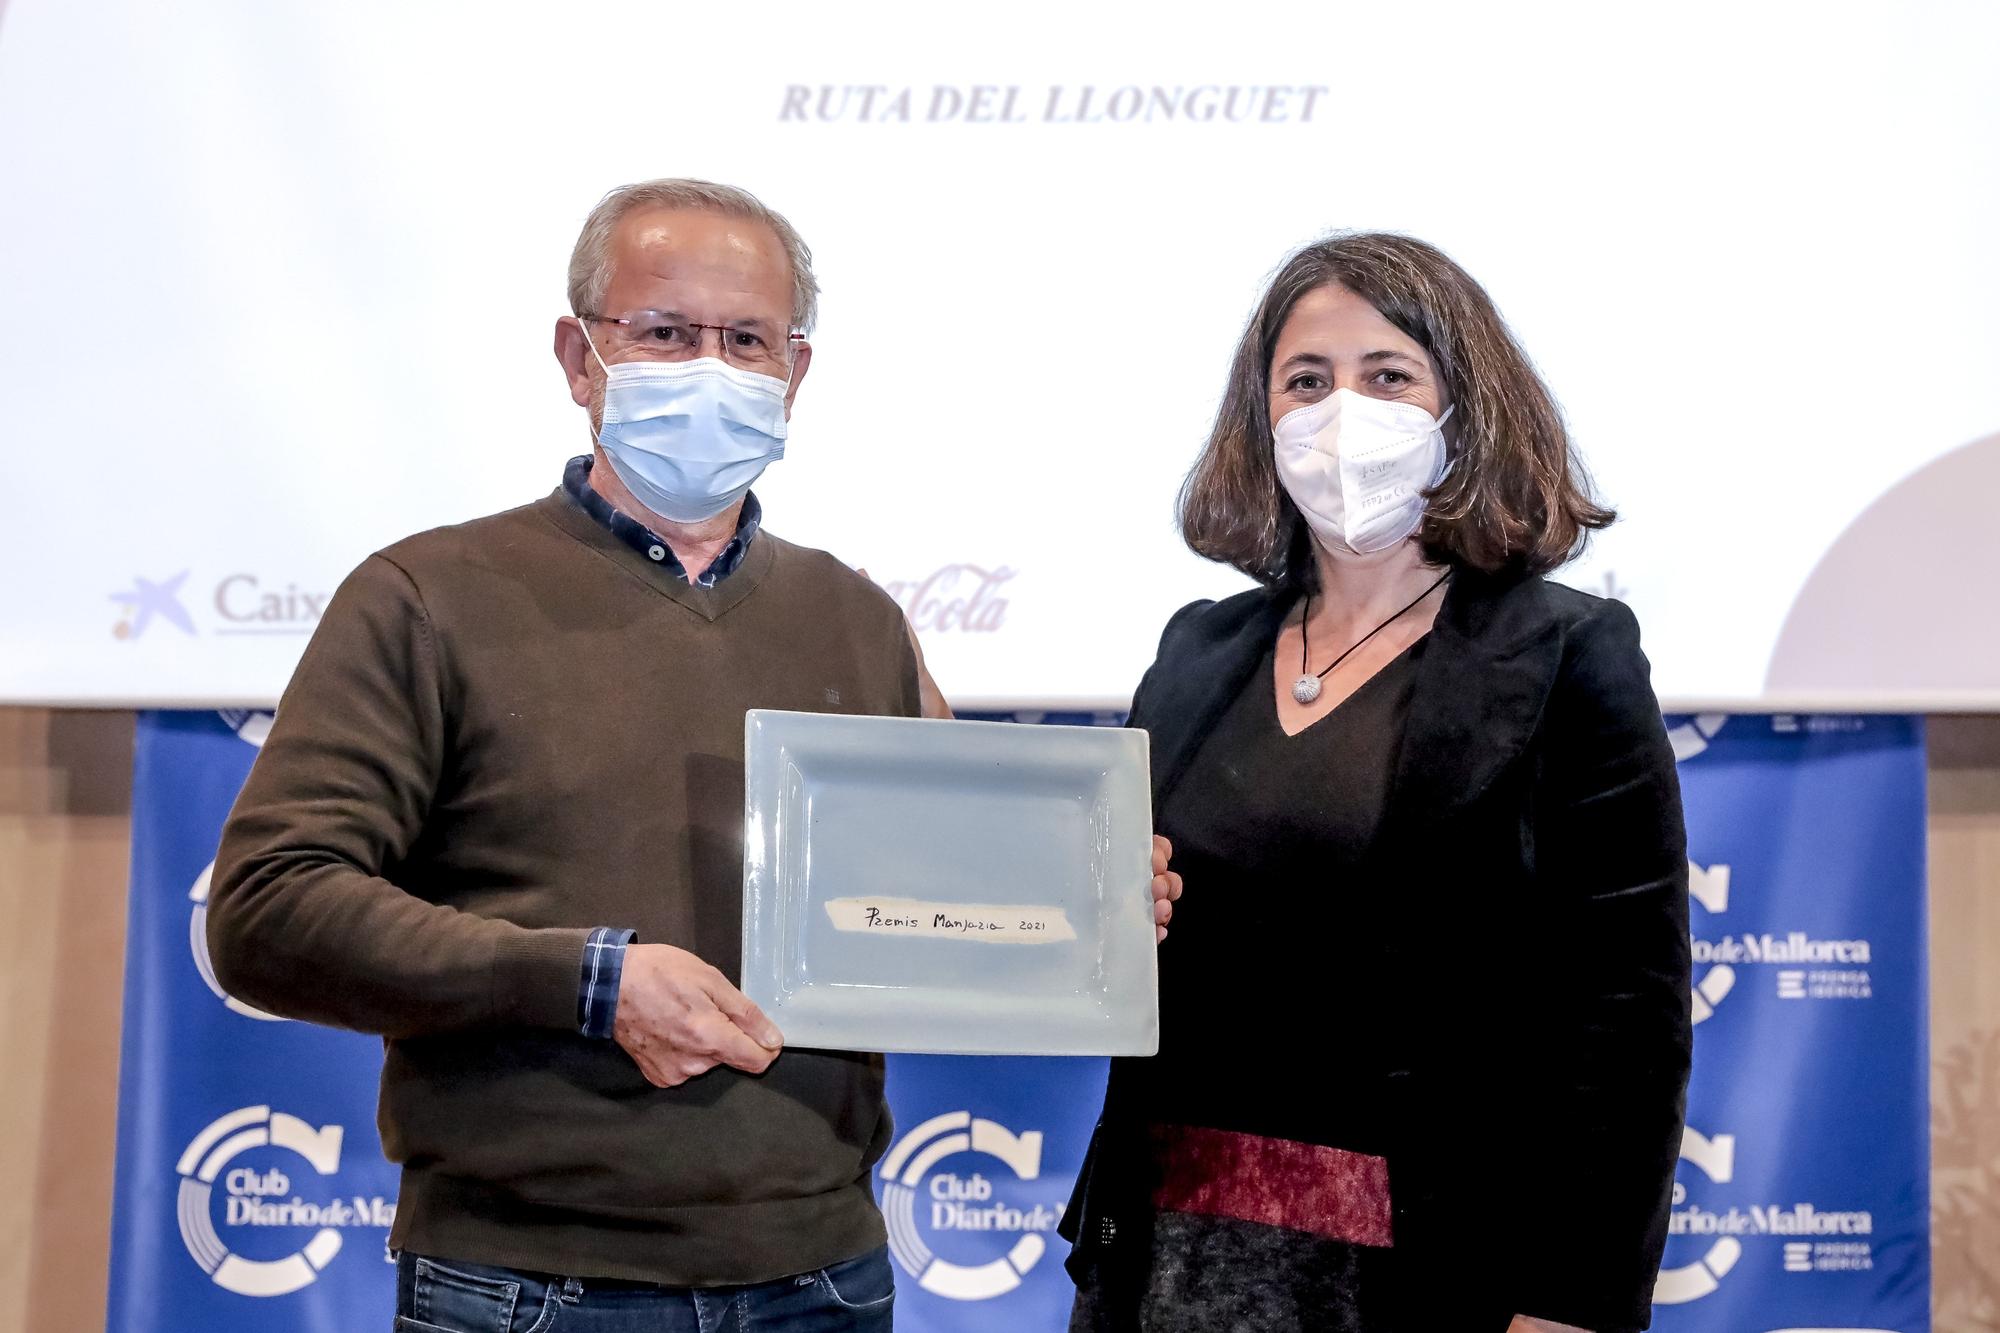 Pep Magraner recibió el premio concedido a la Ruta del Llonguet de manos de Marisa Goñi.